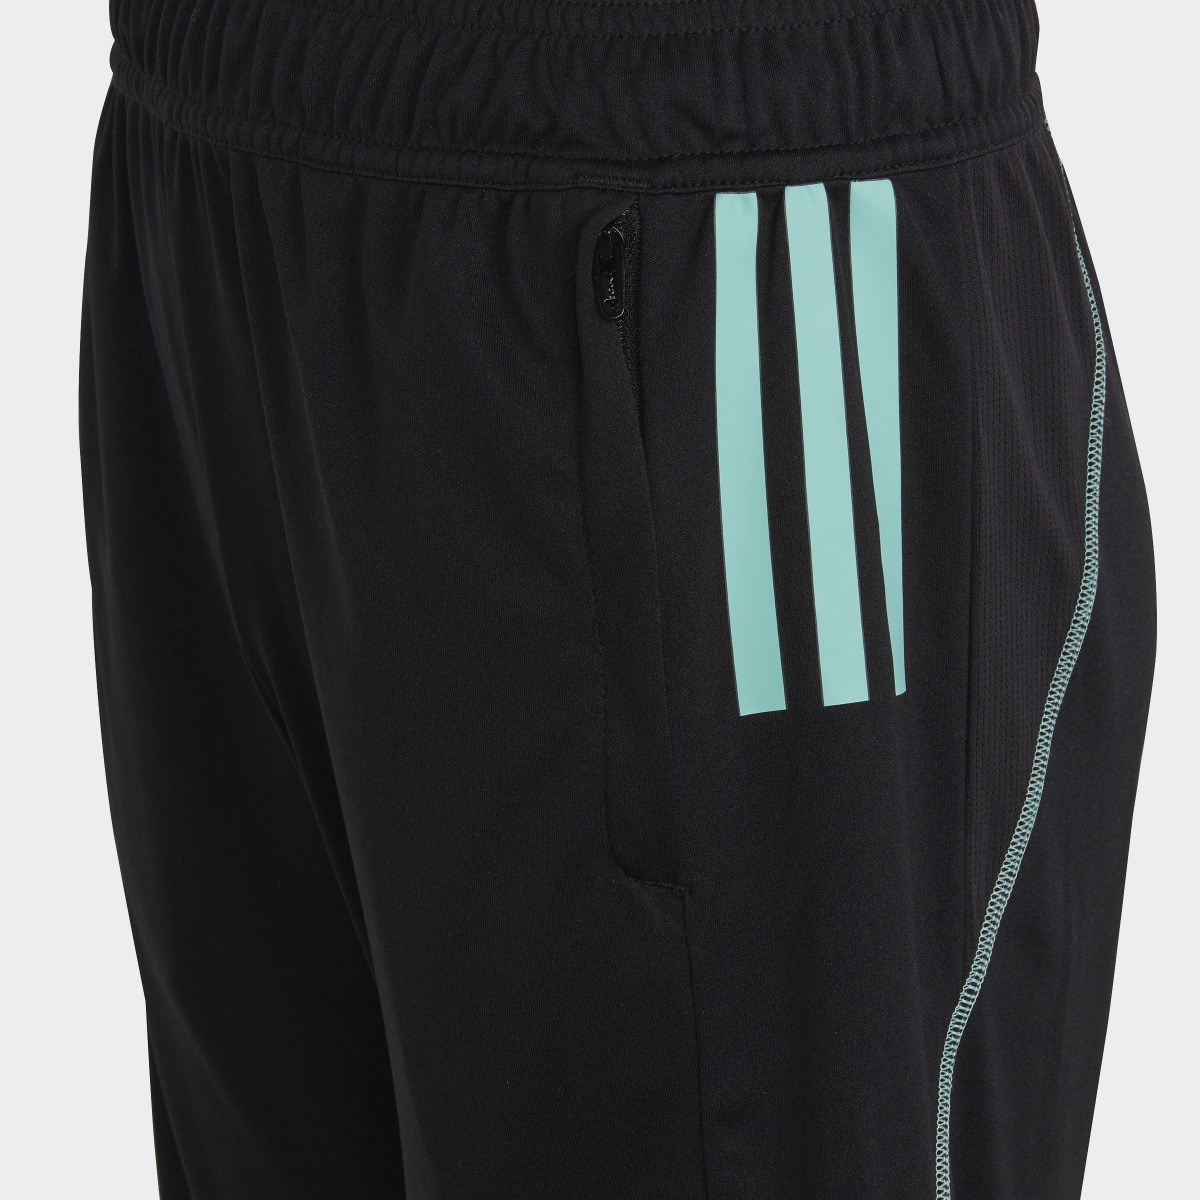 Adidas Tiro Shorts. 5